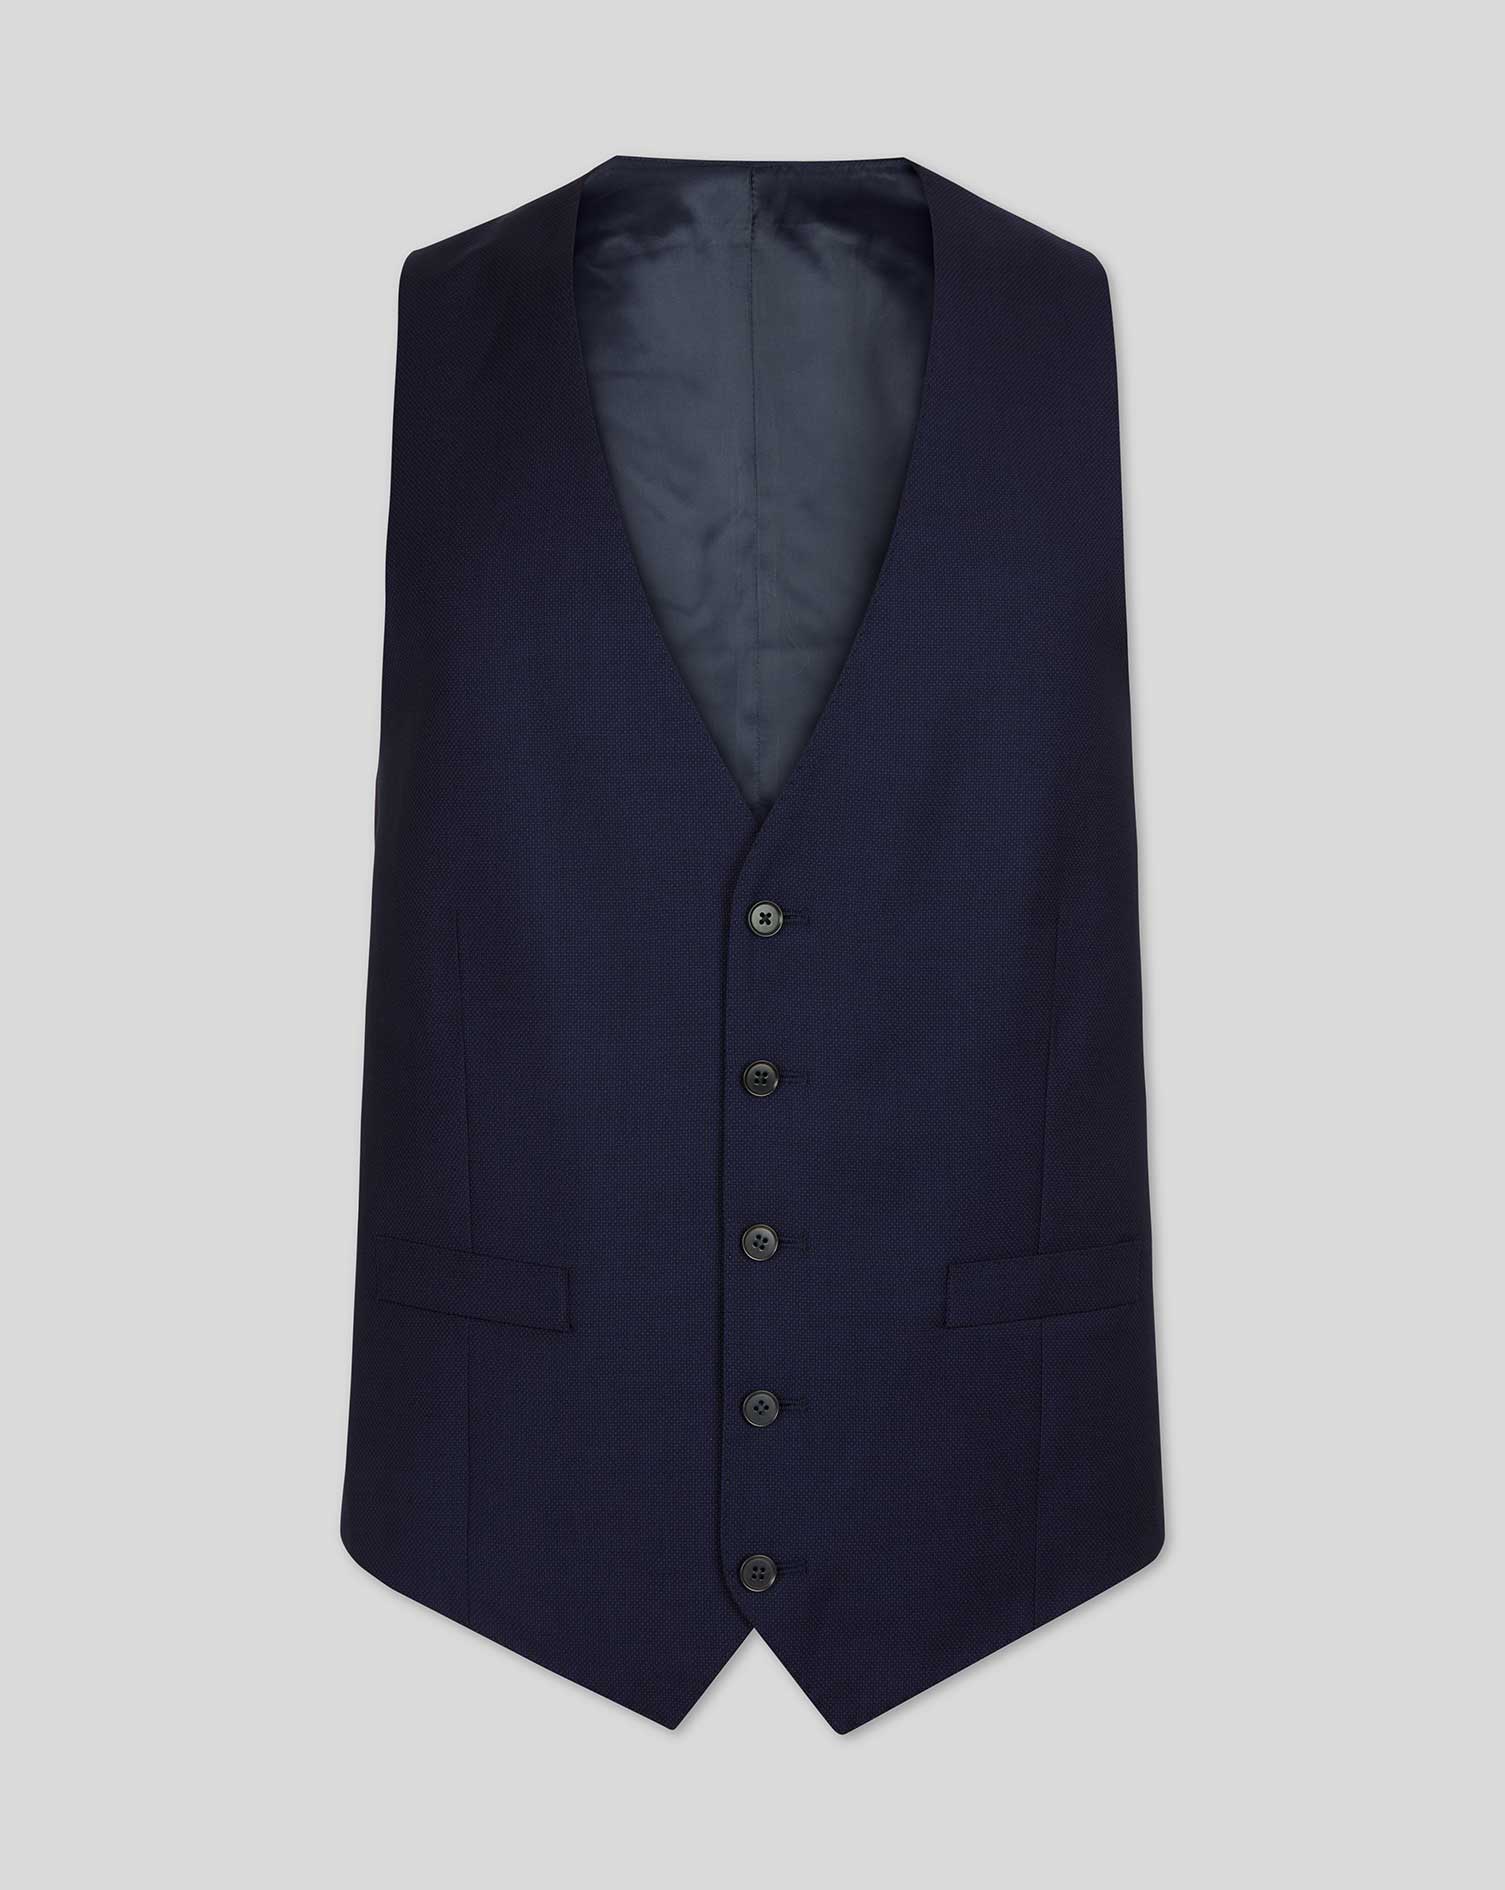 Men's Charles Tyrwhitt Birdseye Travel Suit Waistcoat - Ink Blue Size w46 Wool
